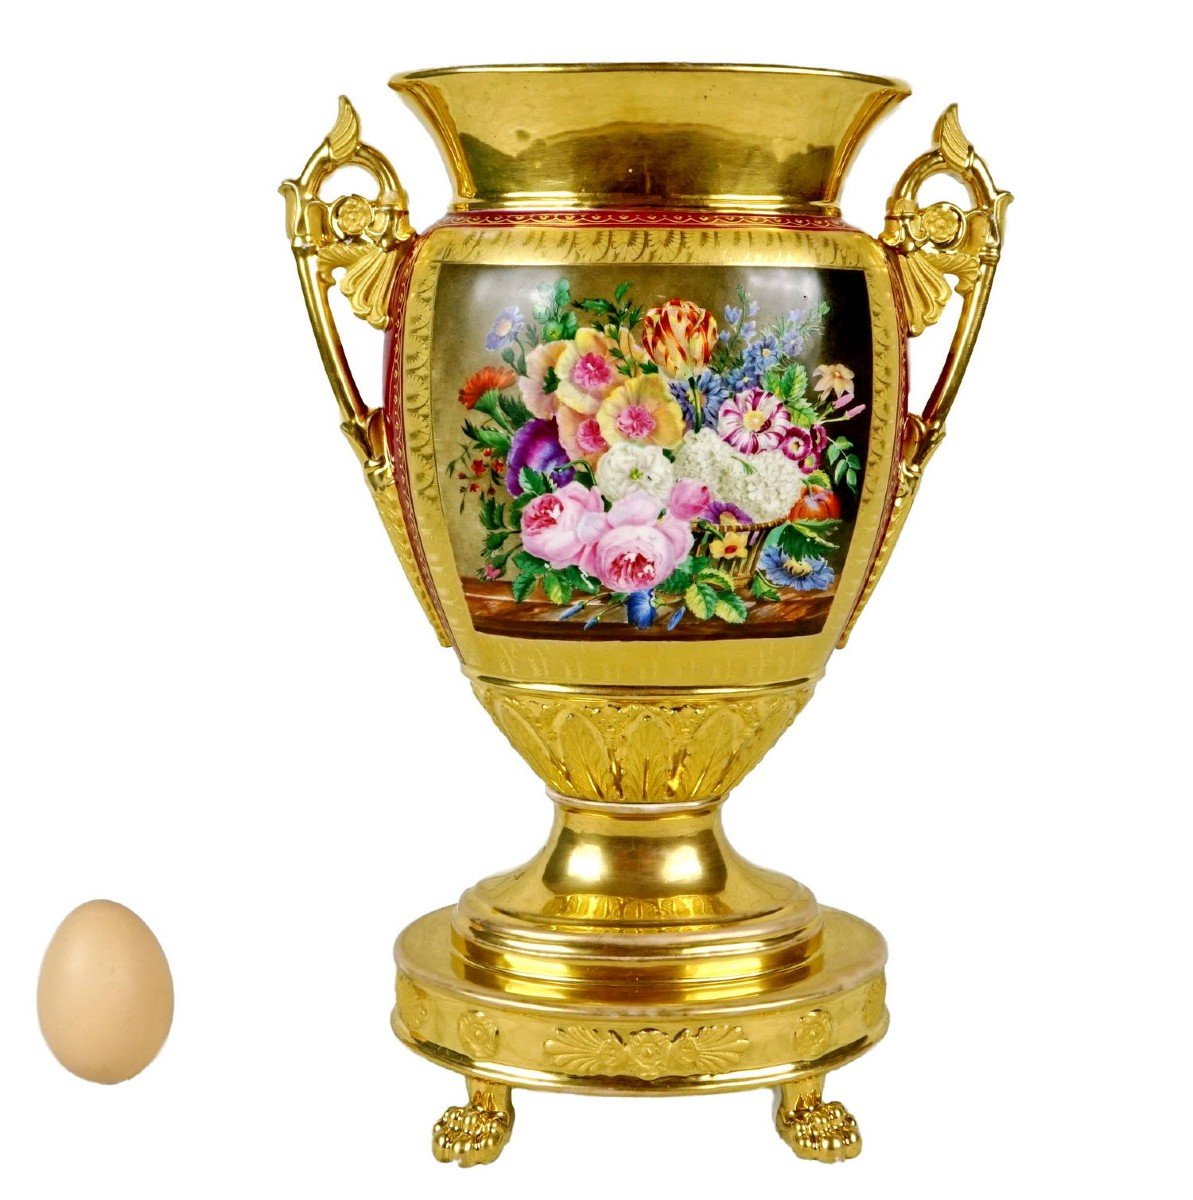 Large Porcelain Vase From Paris - Manufacture De Schoelcher - Ep. Early 19th Century (circa 1815)